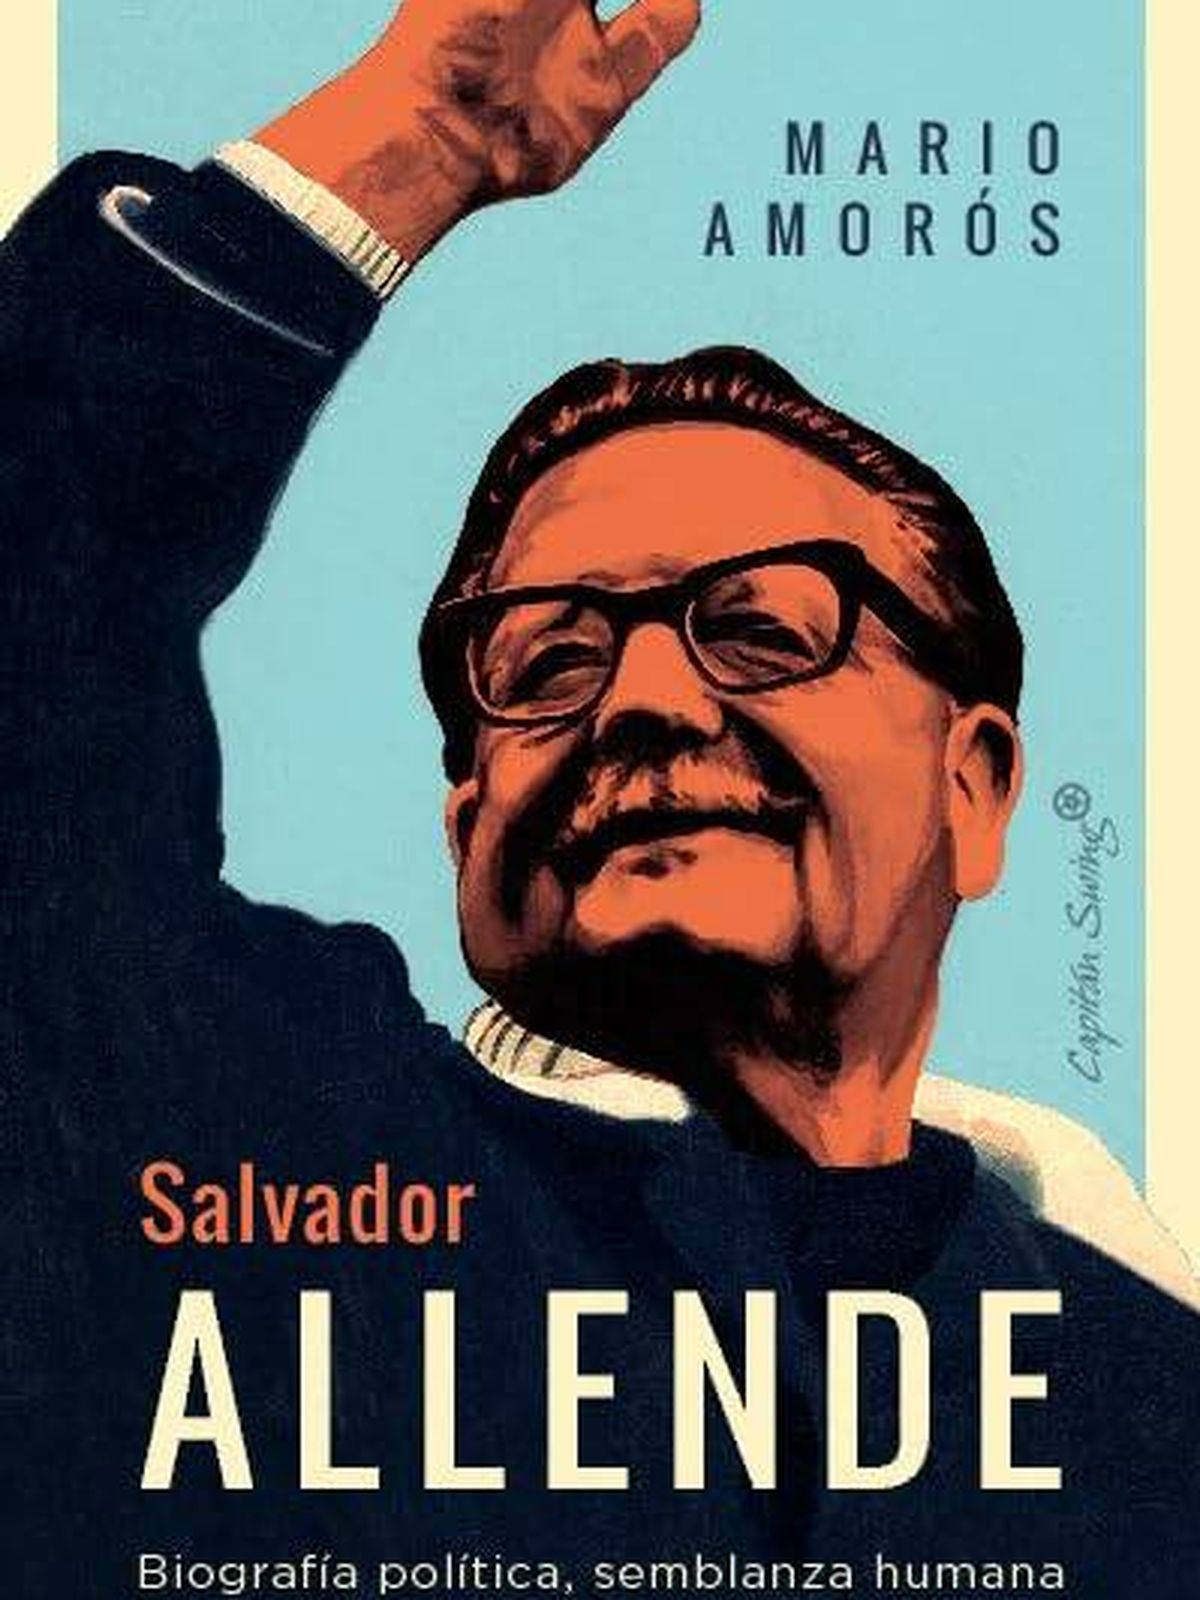 Portada de 'Salvador Allende' de Mario Amorós.